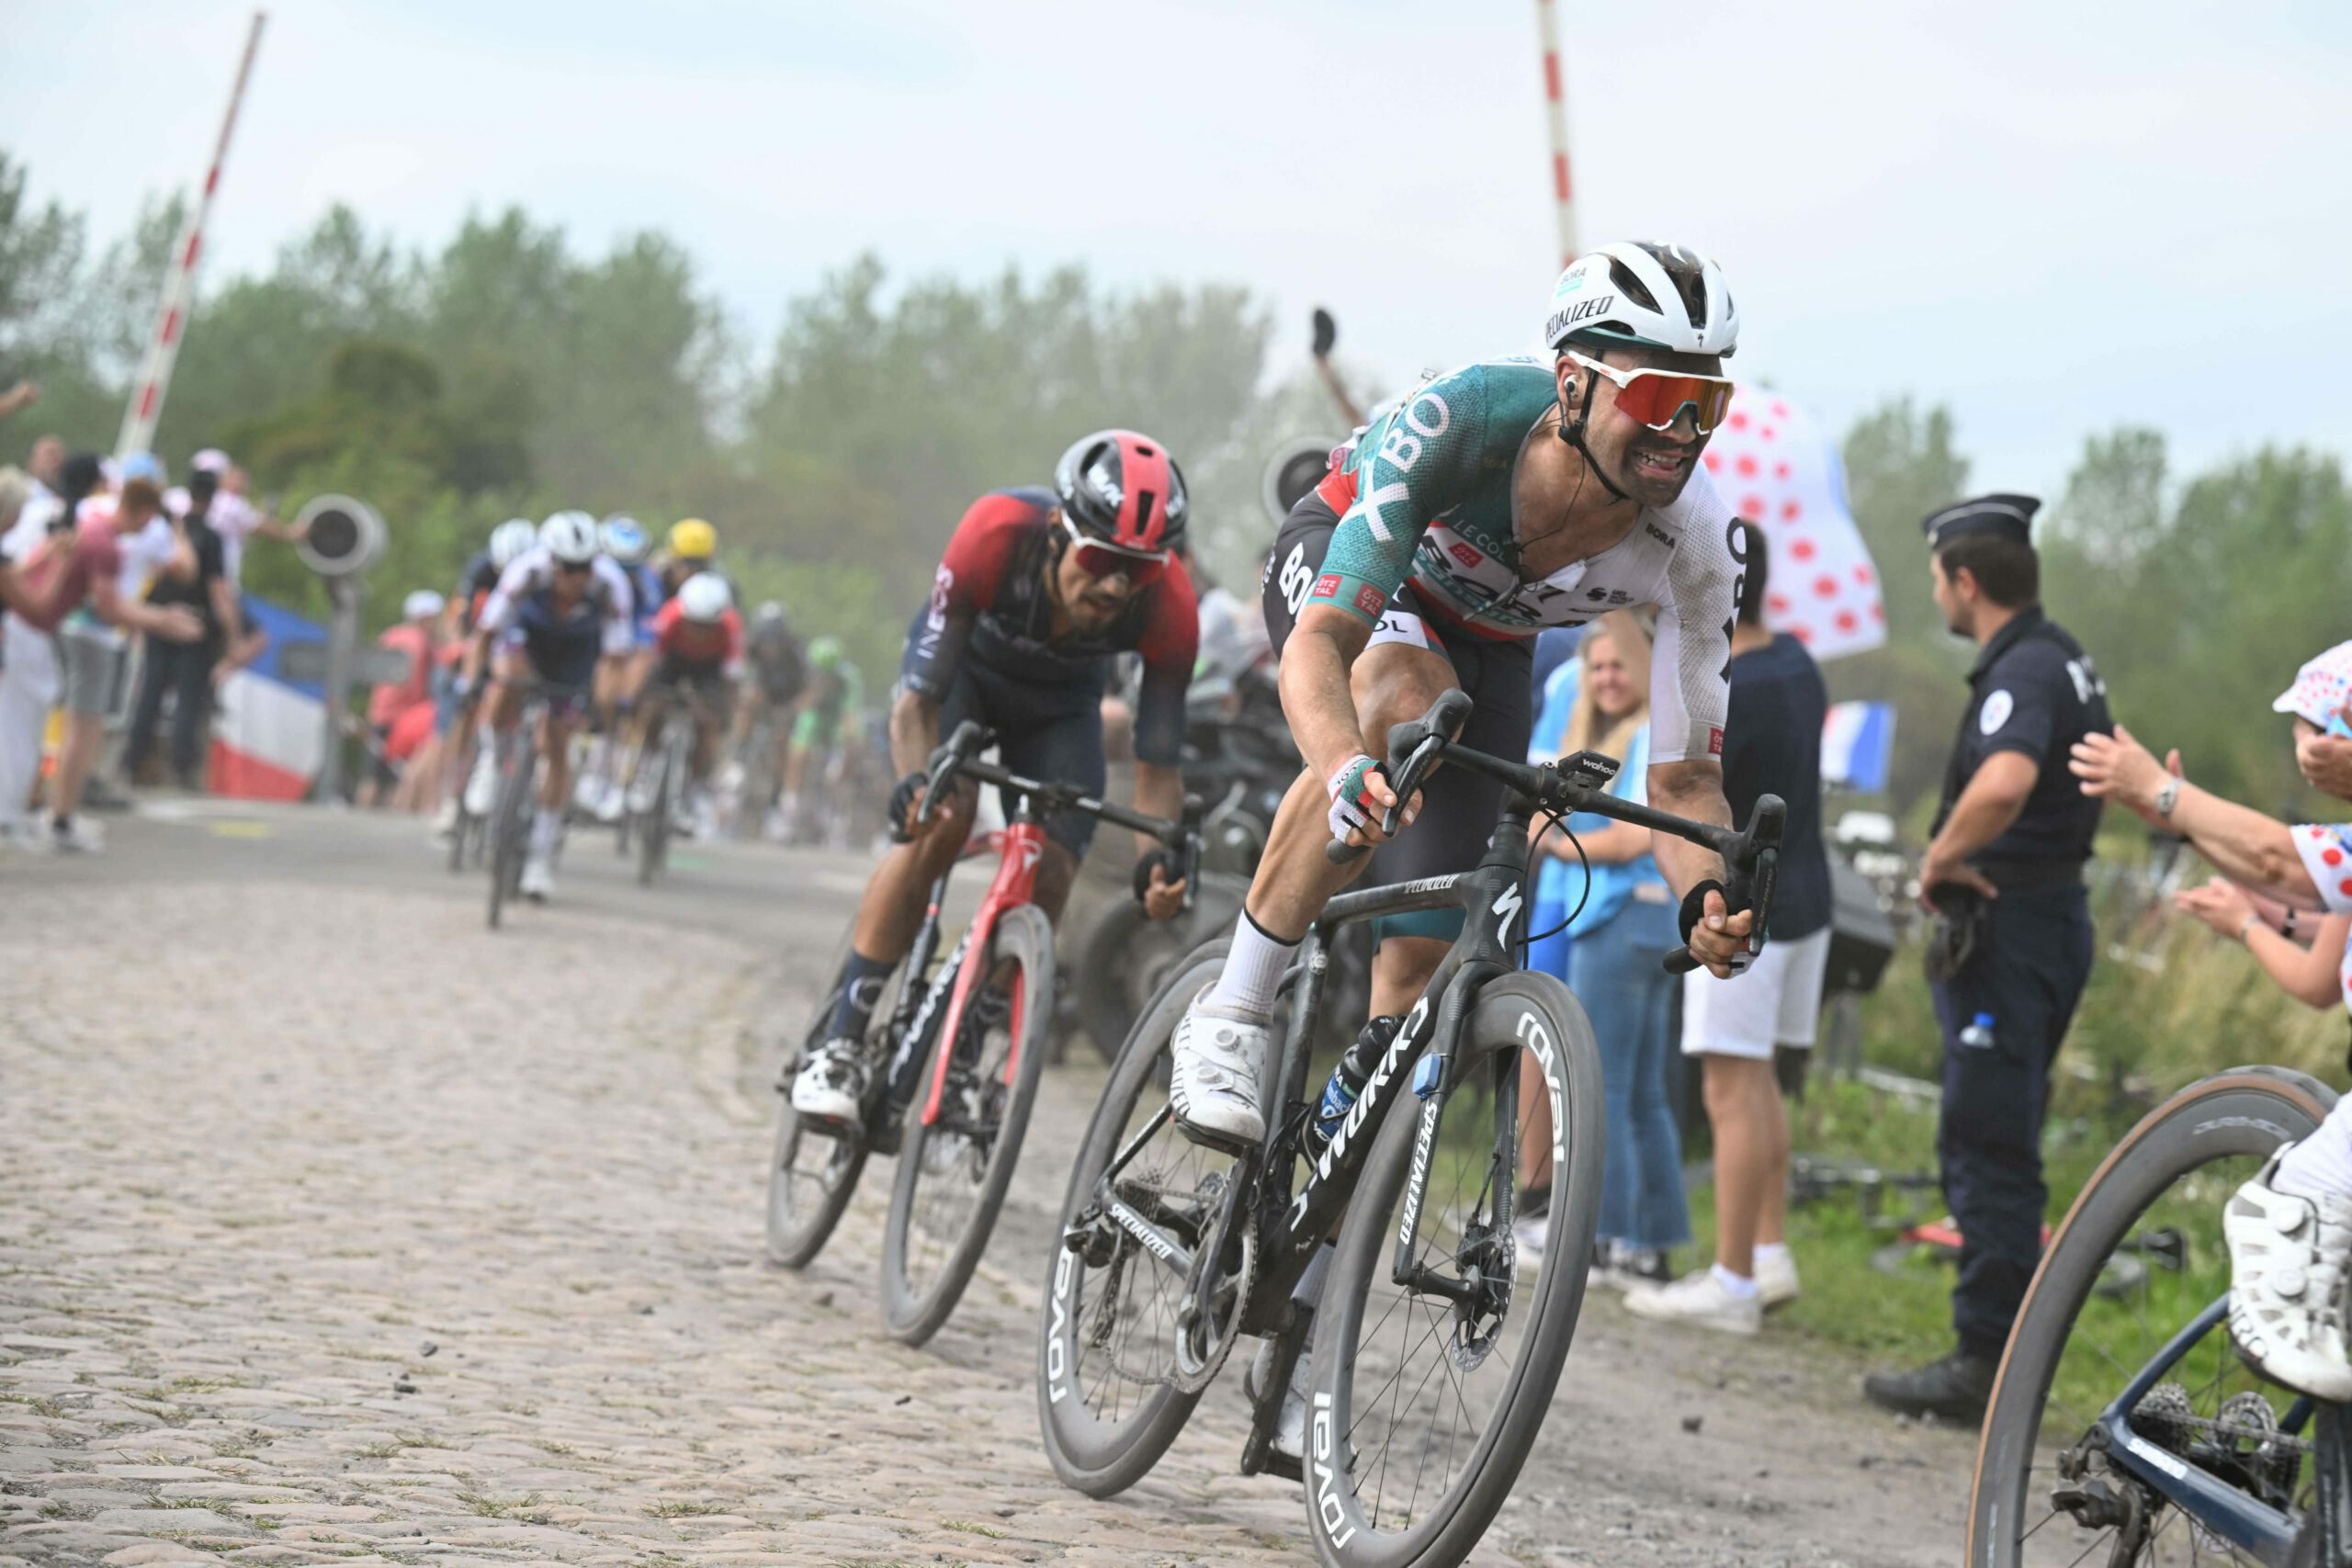 Maximilian Schachmann beim Ritt übers Kopfsteinpflaster der 5. Tour-Etappe. Die Fahrweise der Konkurrenz geht ihm auf die Nerven.